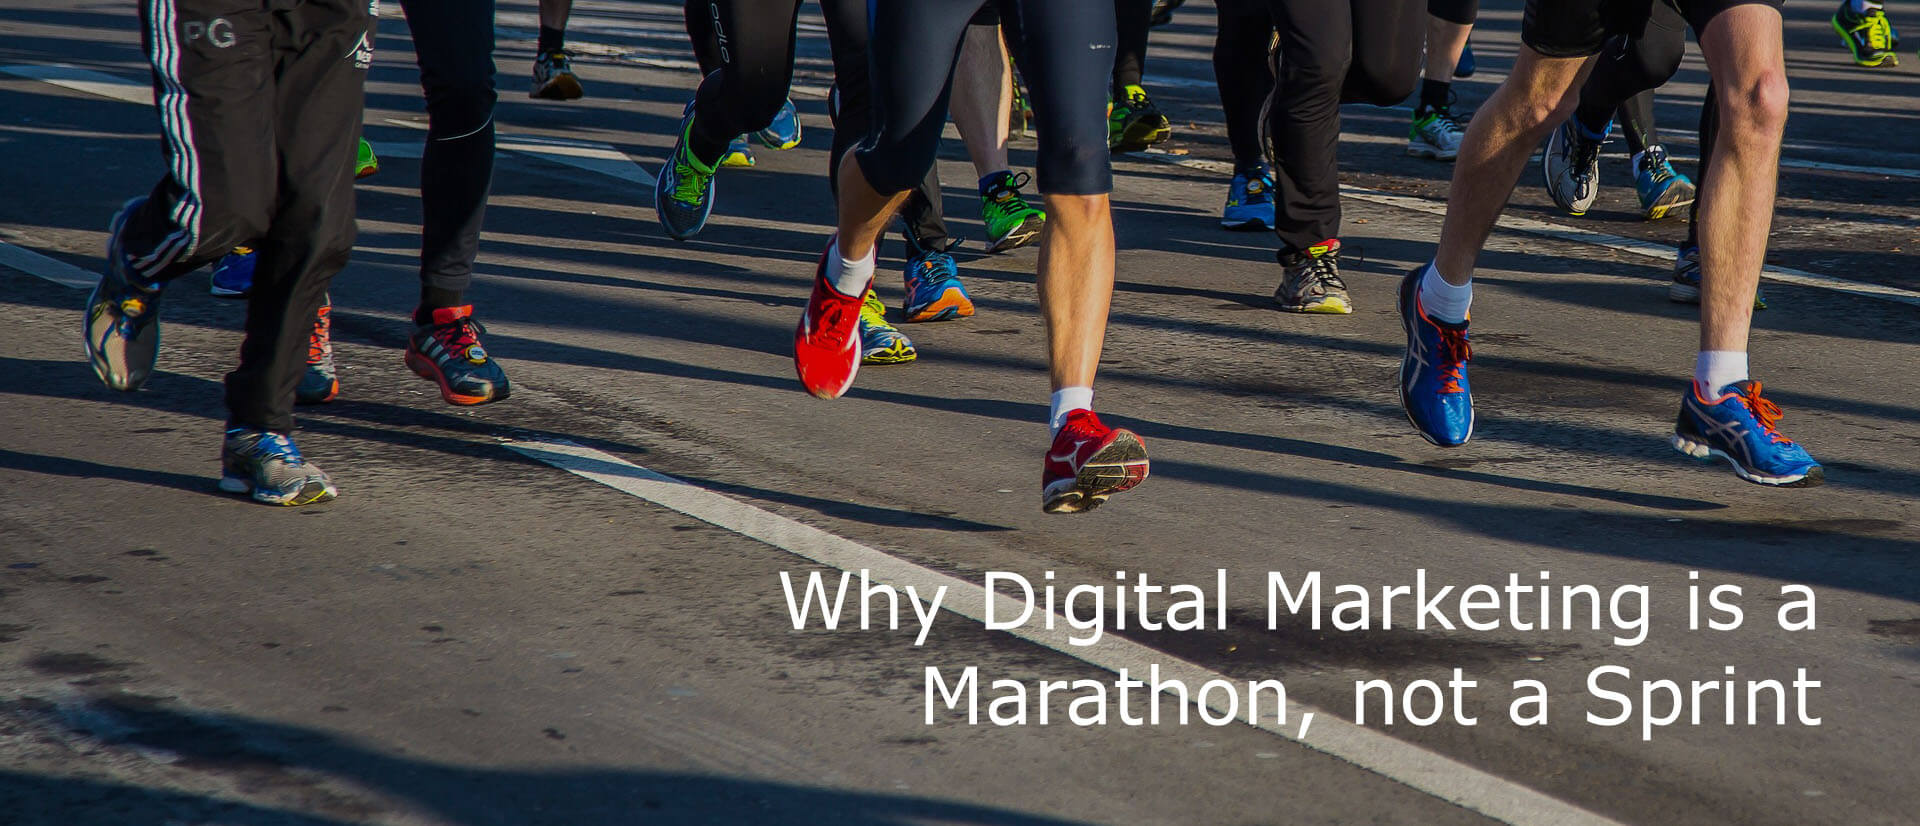 Why Digital Marketing is a Marathon, not a Sprint